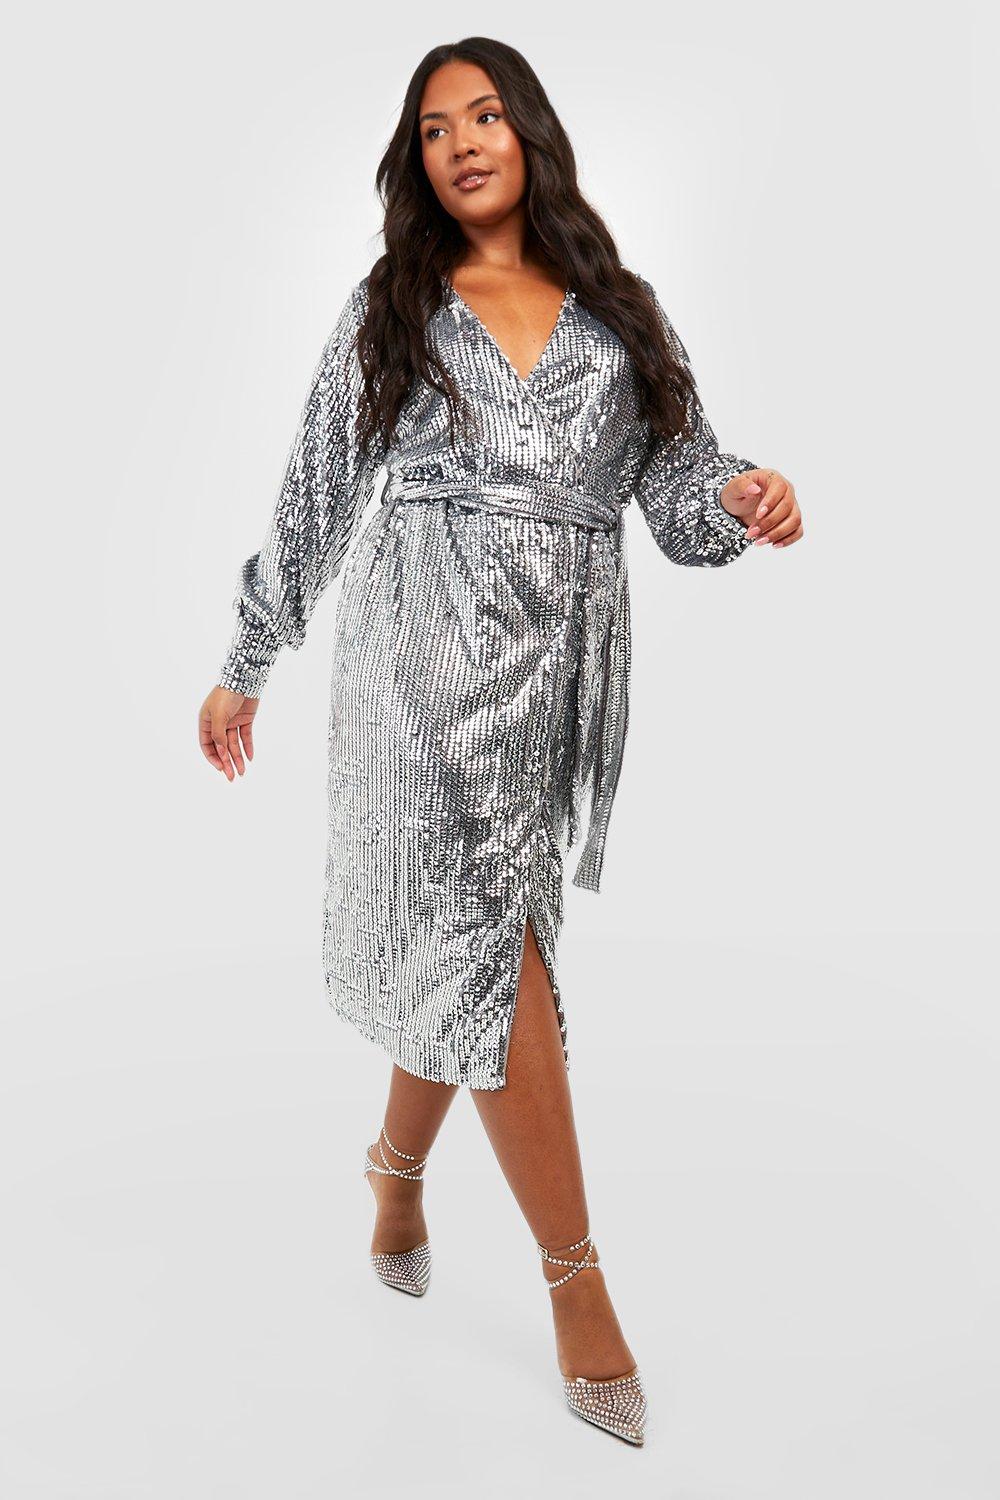 silver plus size dress